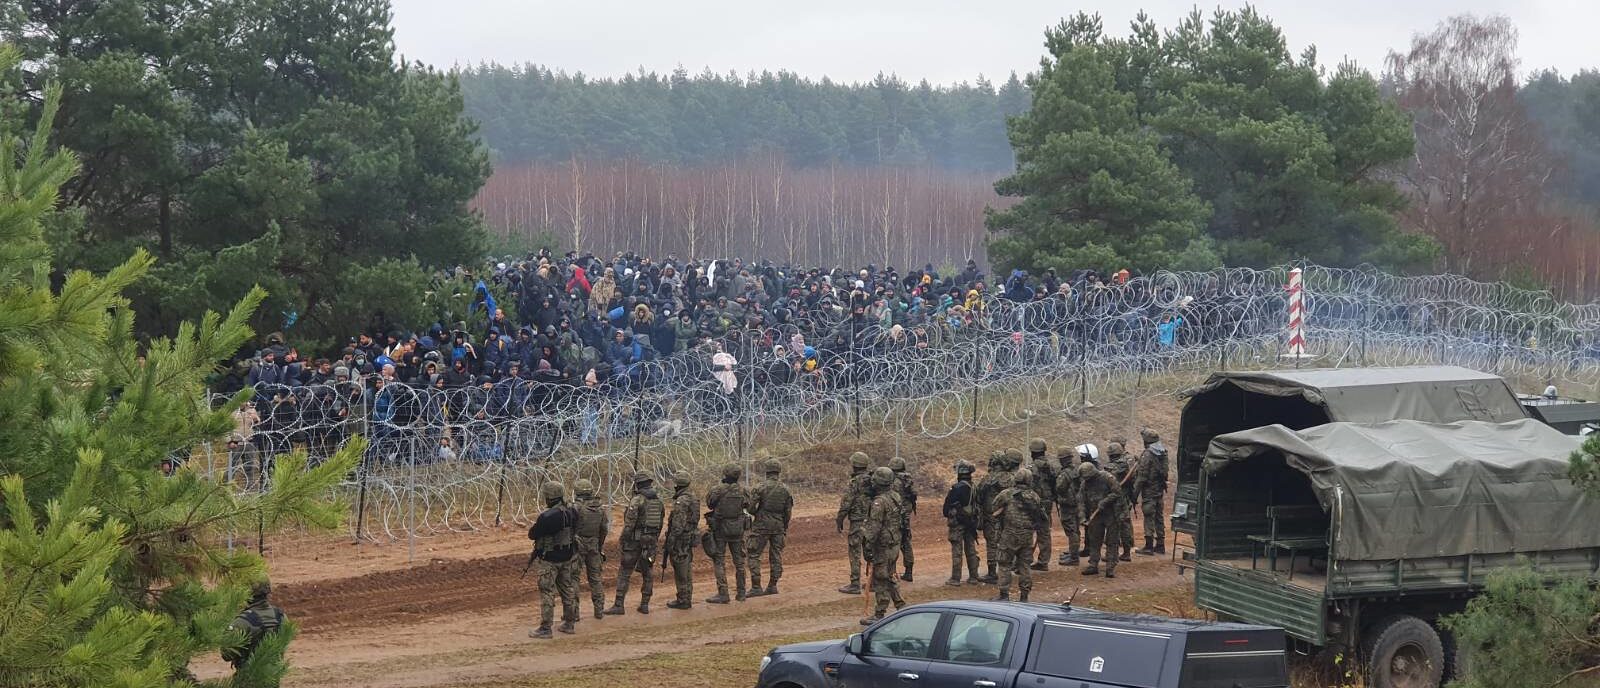 Le pape François est préoccupé par le sort des migrants en Europe du nord-est | (ici, à la frontière entre la Biélorussie et la Pologne) © Flickr/Kancelaria Premiera/CC BY-NC-ND 2.0